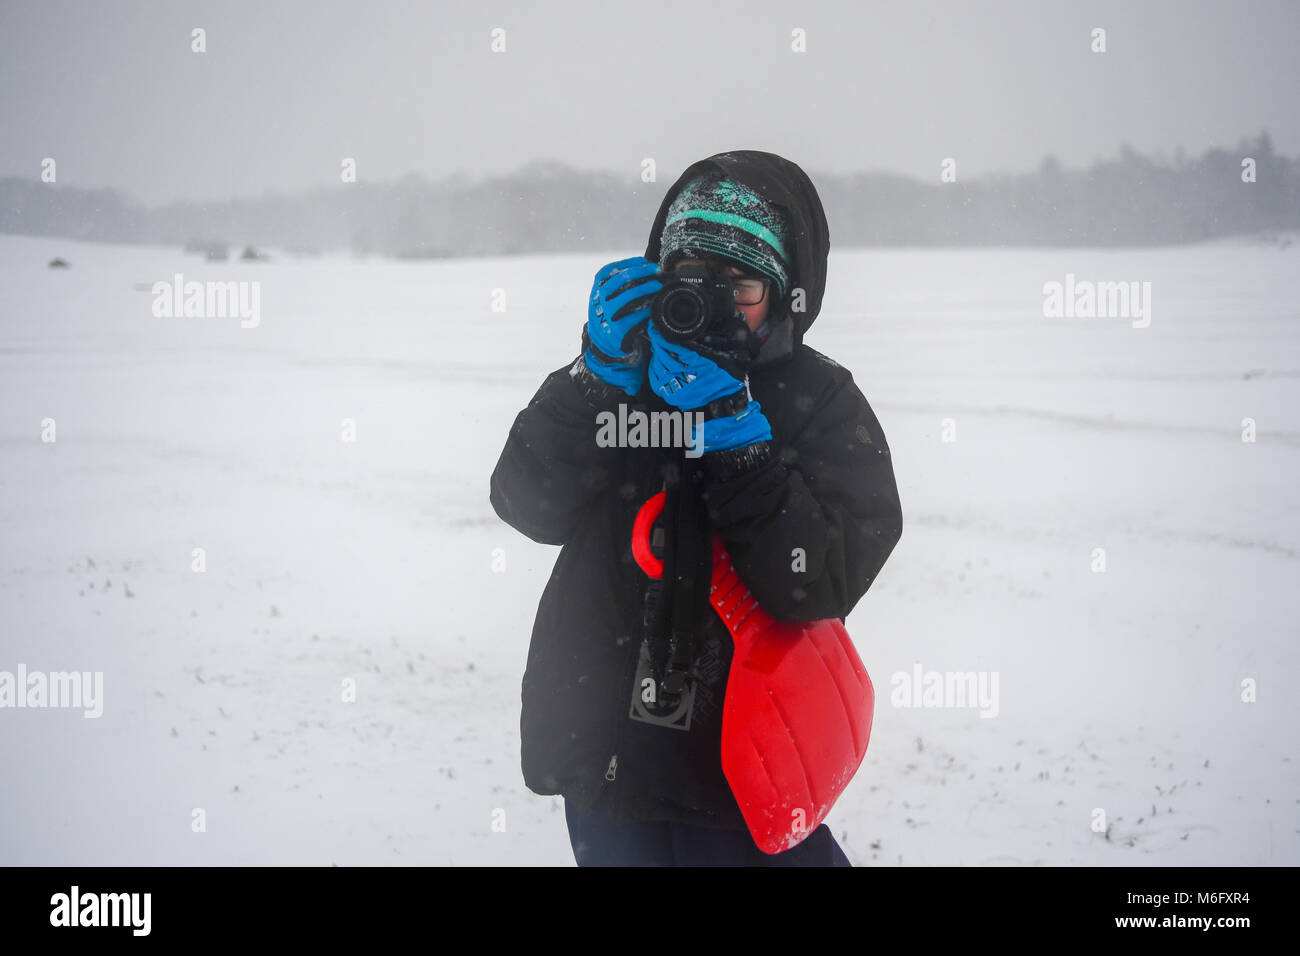 Un adolescent prend des photos avec un Fuji XT1 une tempête de neige dans le New Forest Hampshire Angleterre vêtus de vêtements chauds pour l'hiver et des gants. Banque D'Images